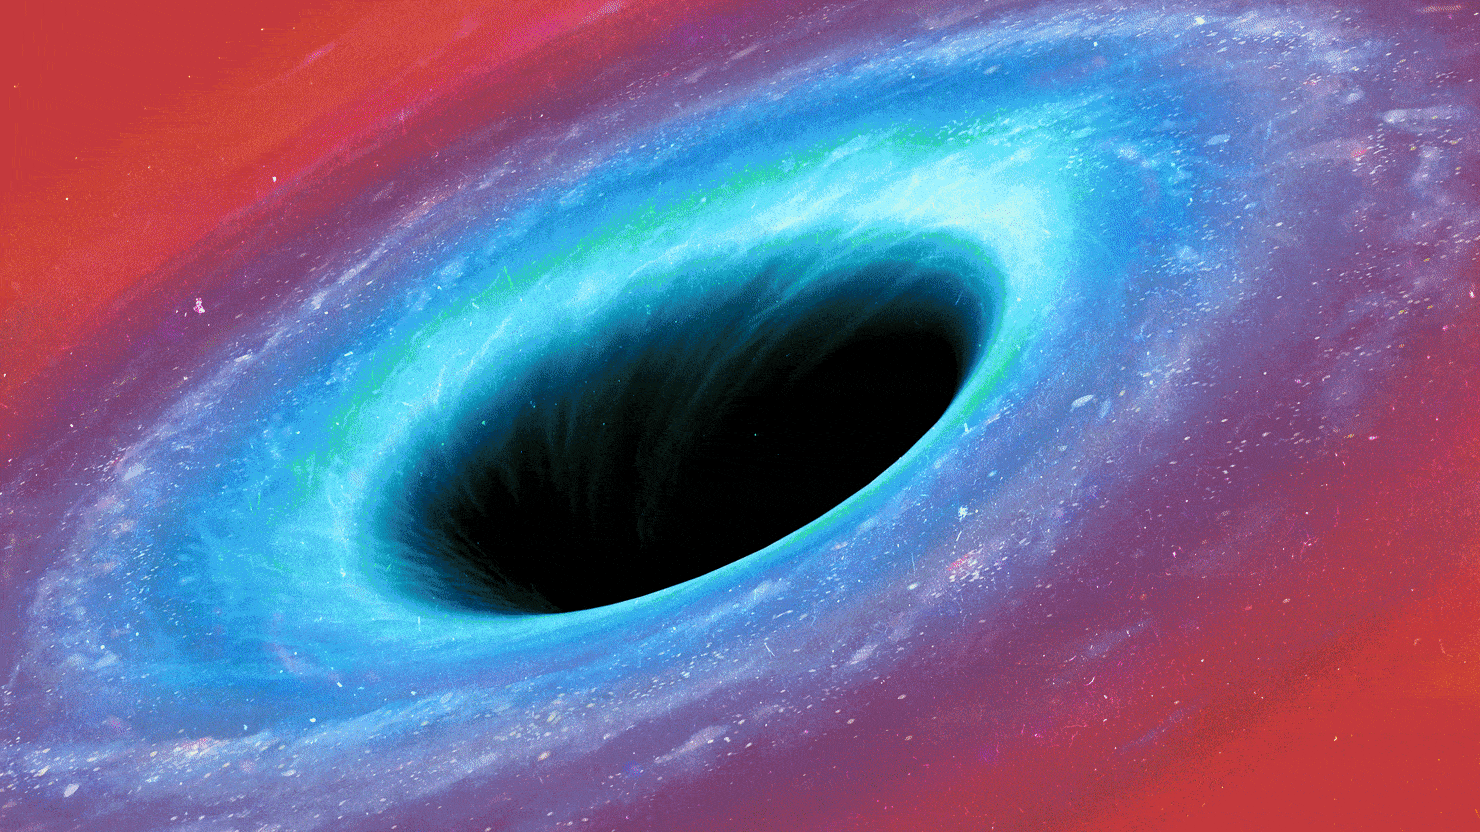 تقترح نظرية فيزياء جديدة أن الثقوب السوداء هي مفتاح دورات توسع الكون وانكماشه